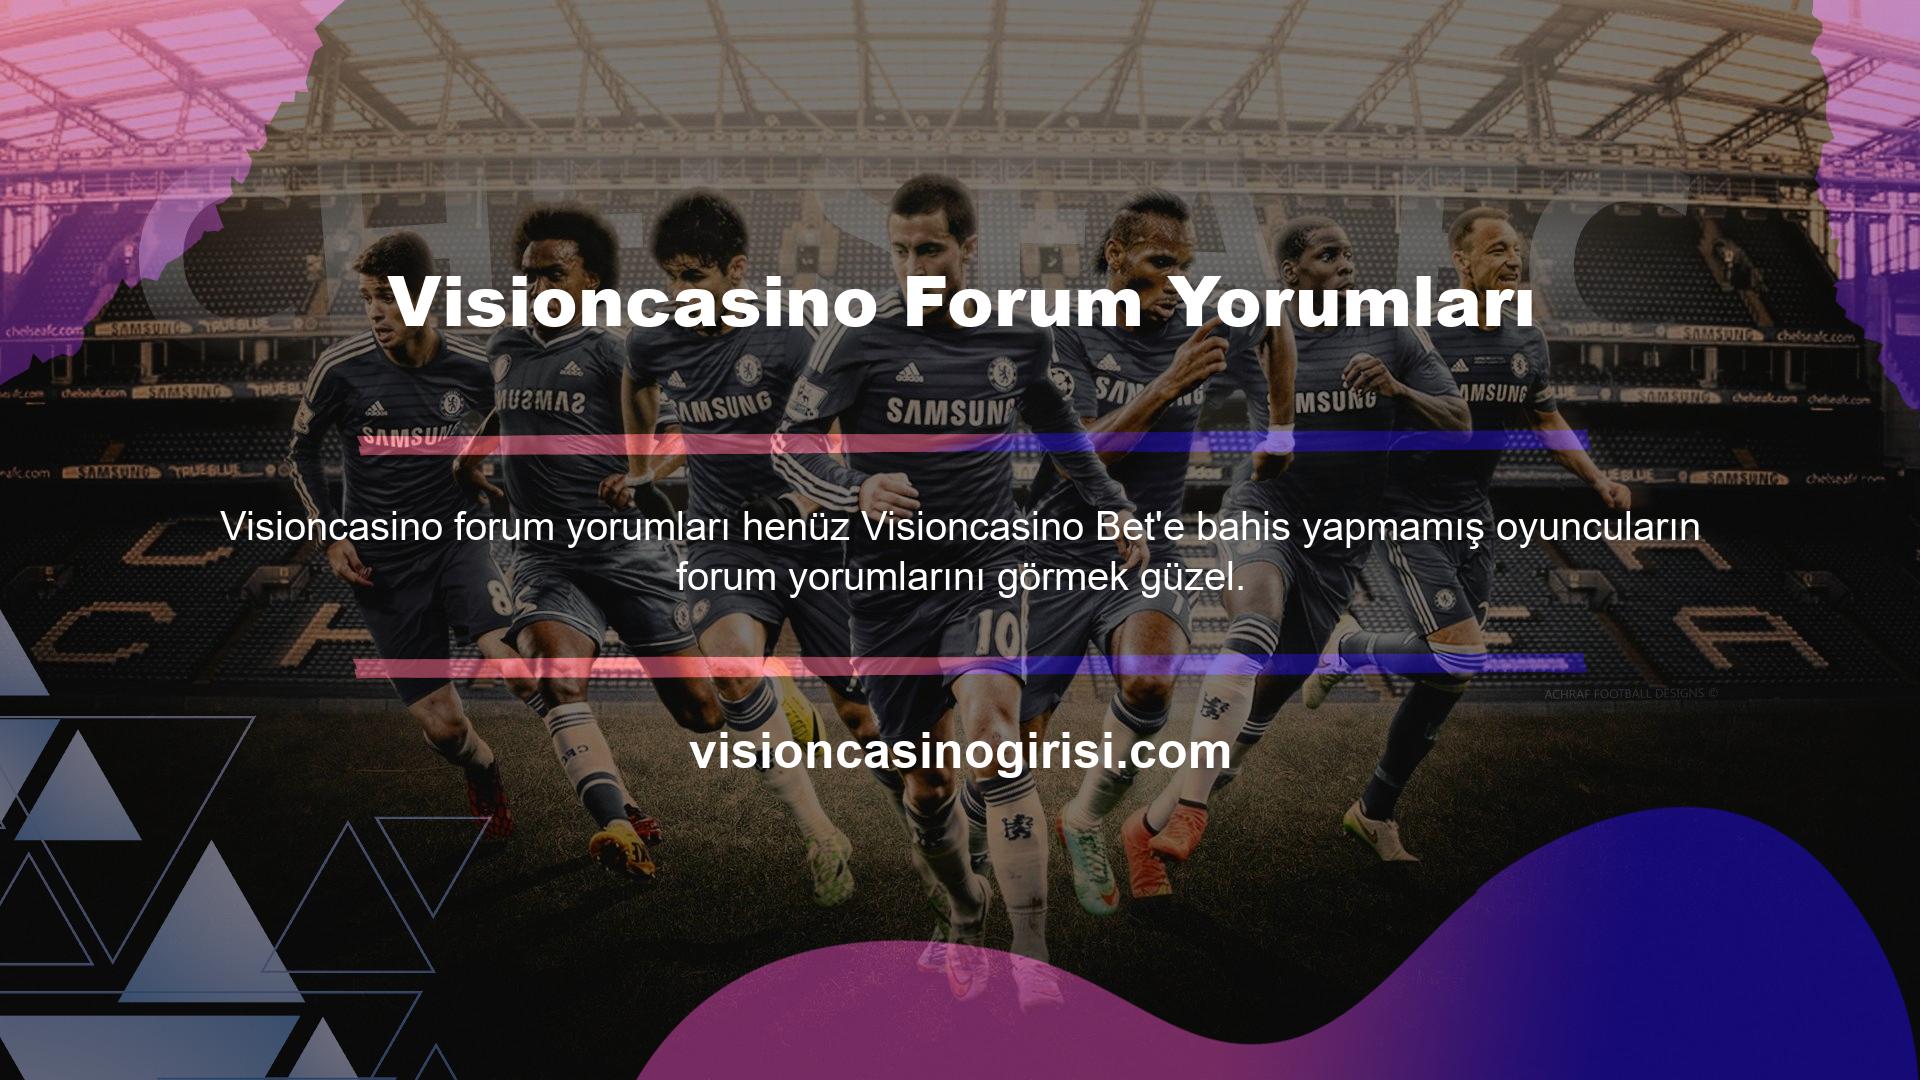 Visioncasino forum incelemeleri, sitede daha önce bahis oynamış olanlara, Visioncasino forum incelemeleri bahisçilere sunulmaktadır